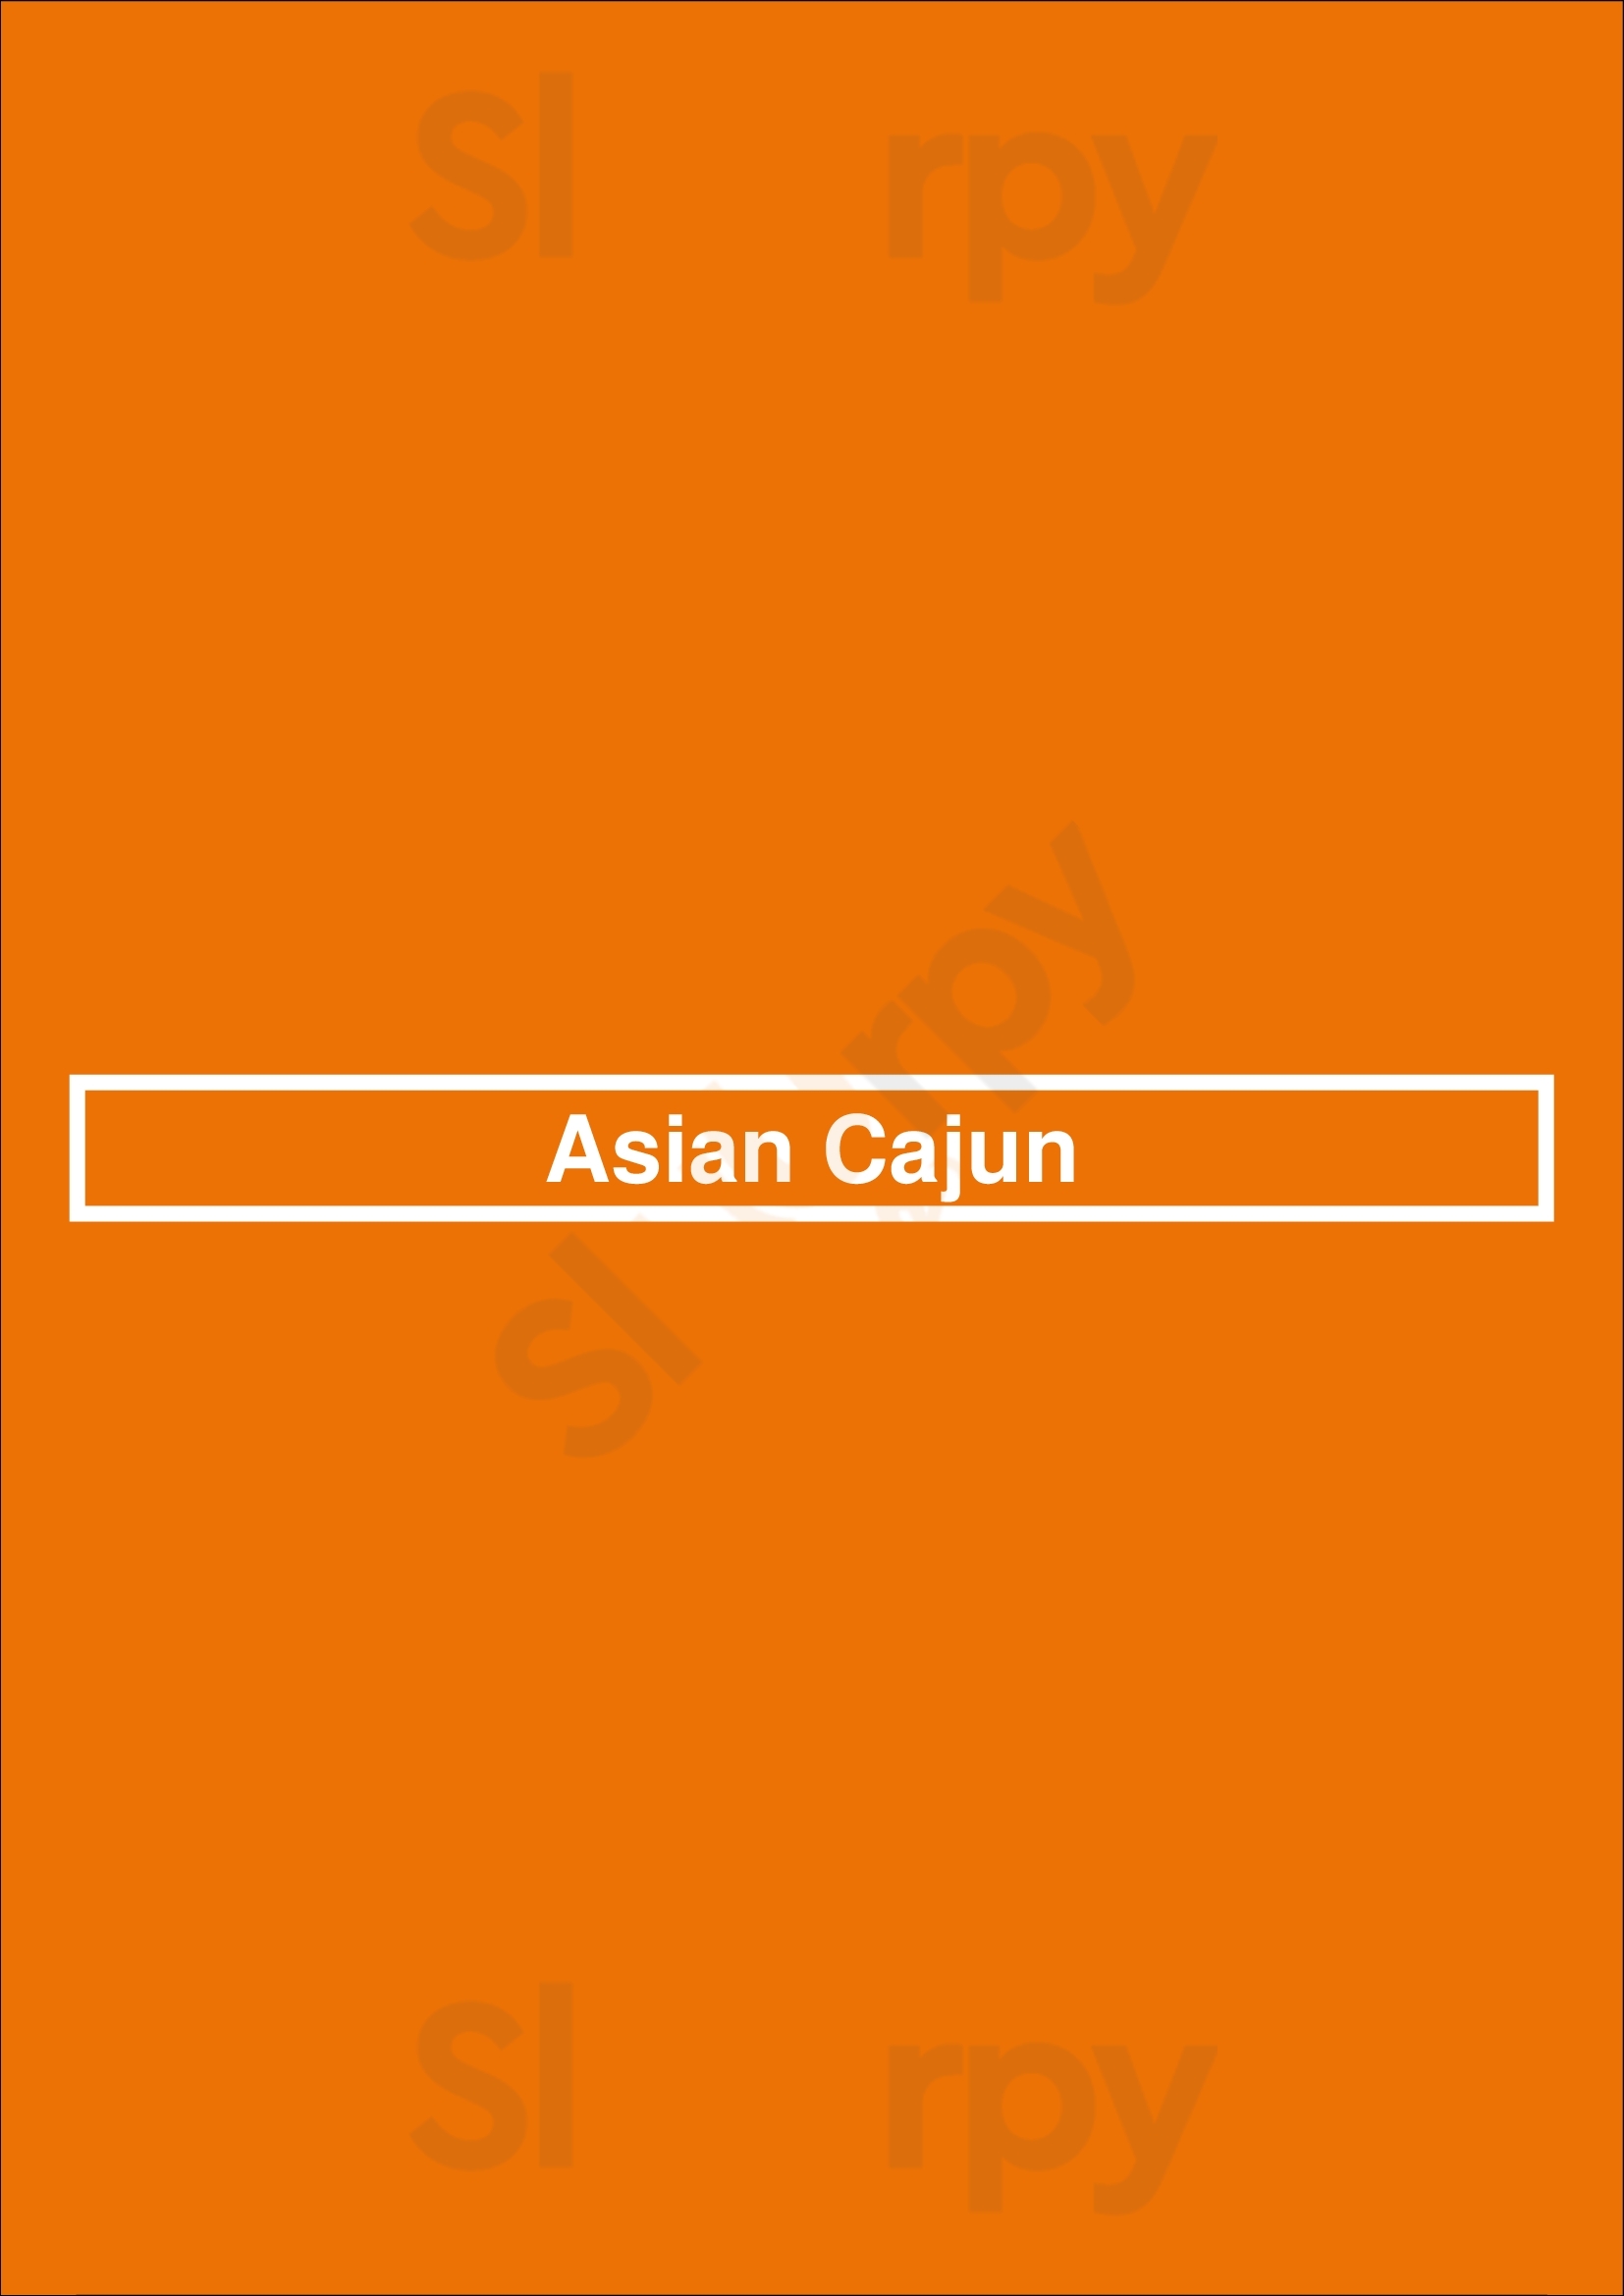 Asian Cajun Chicago Menu - 1